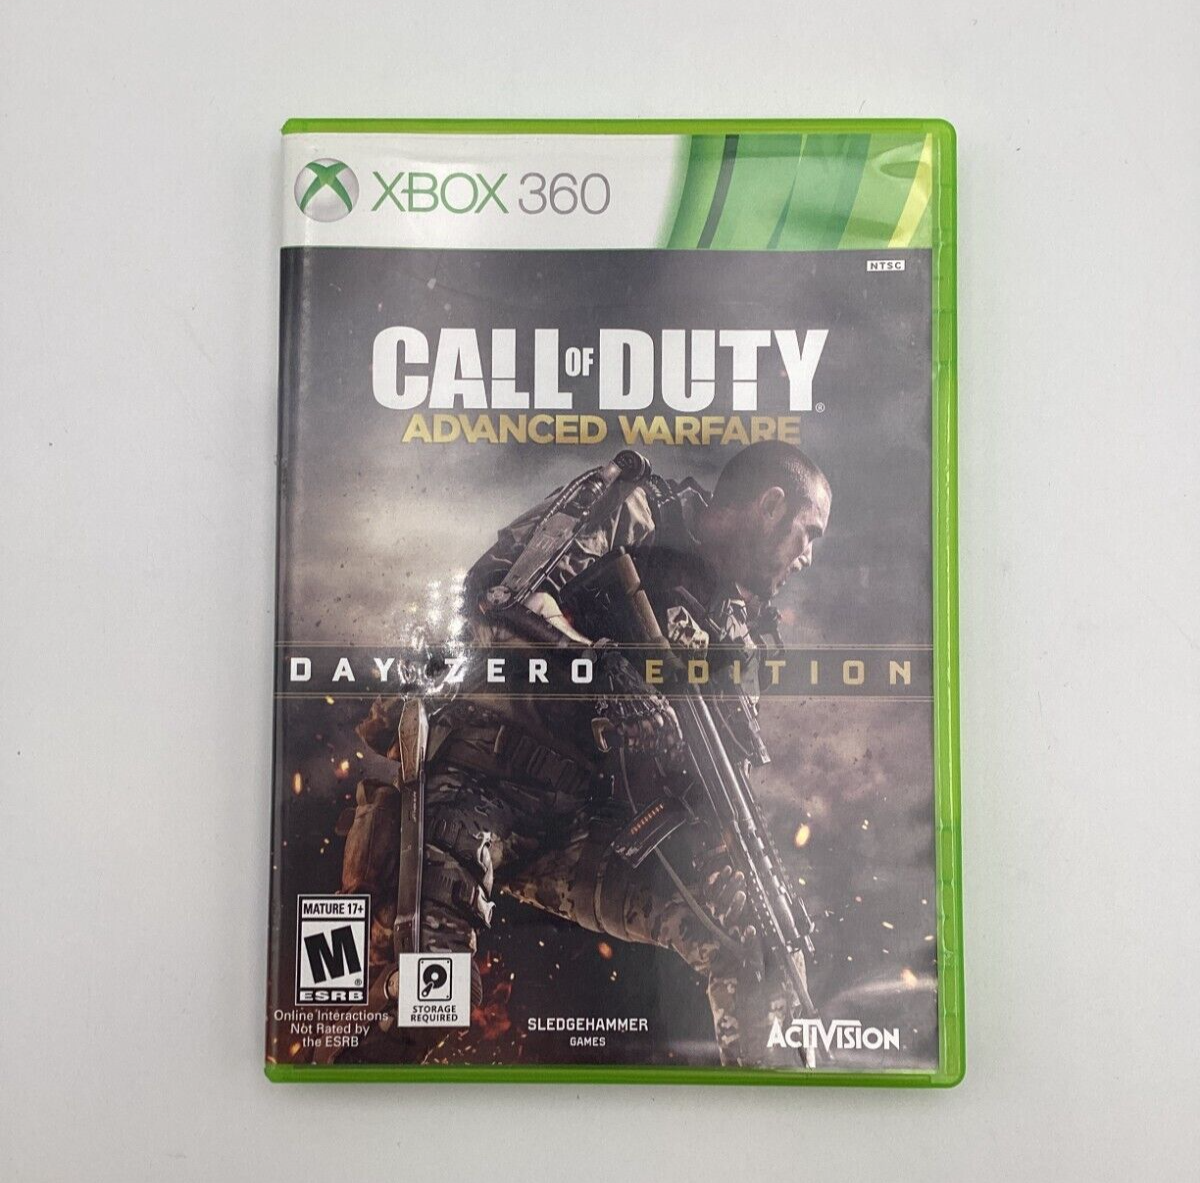 Jogo Call of Duty: Advanced Warfare Edição Day Zero (Seminovo) - Xbox -  XonGeek - O Melhor em Games e Tecnologia você encontra aqui!